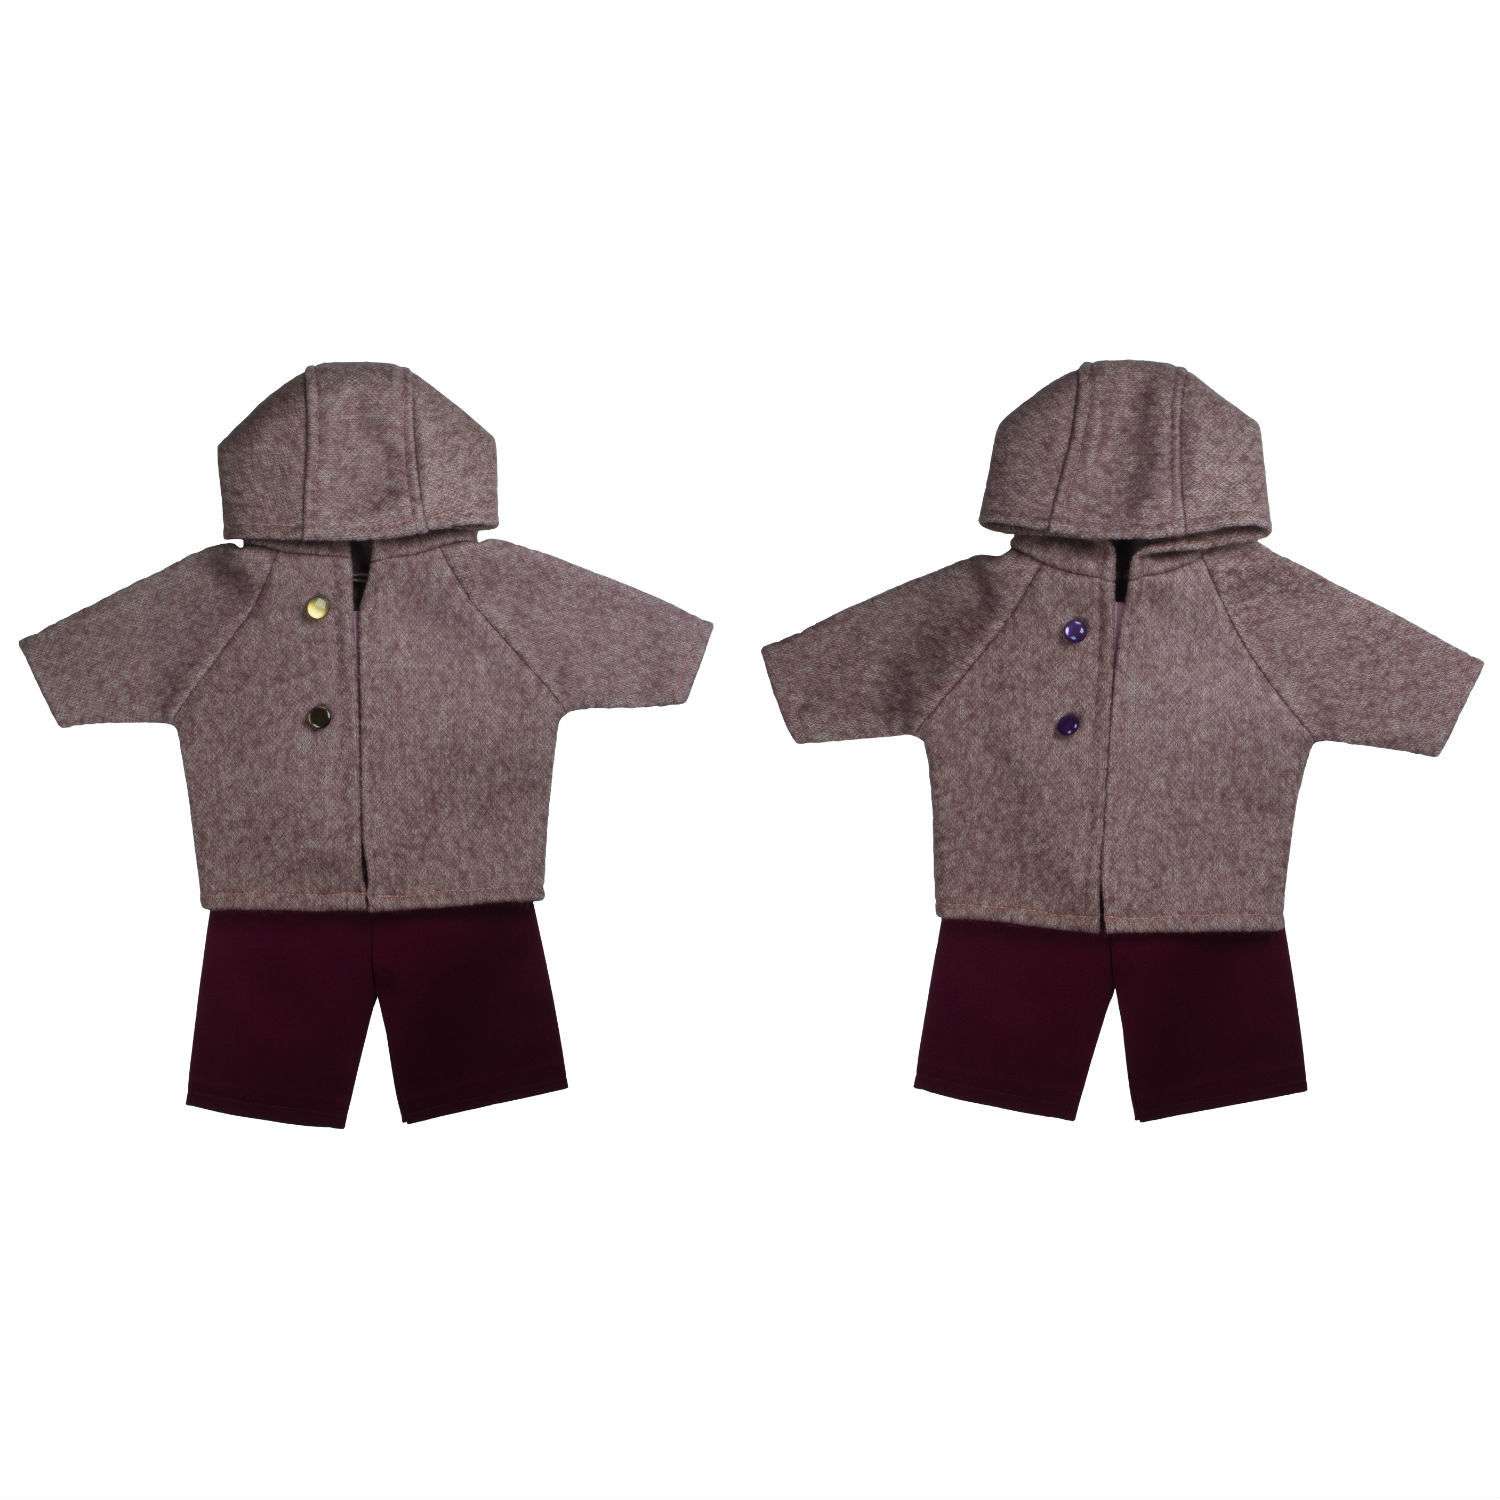 Одежда для кукол 43-48 см Модница комплект в ассортименте 6115 - фото 1